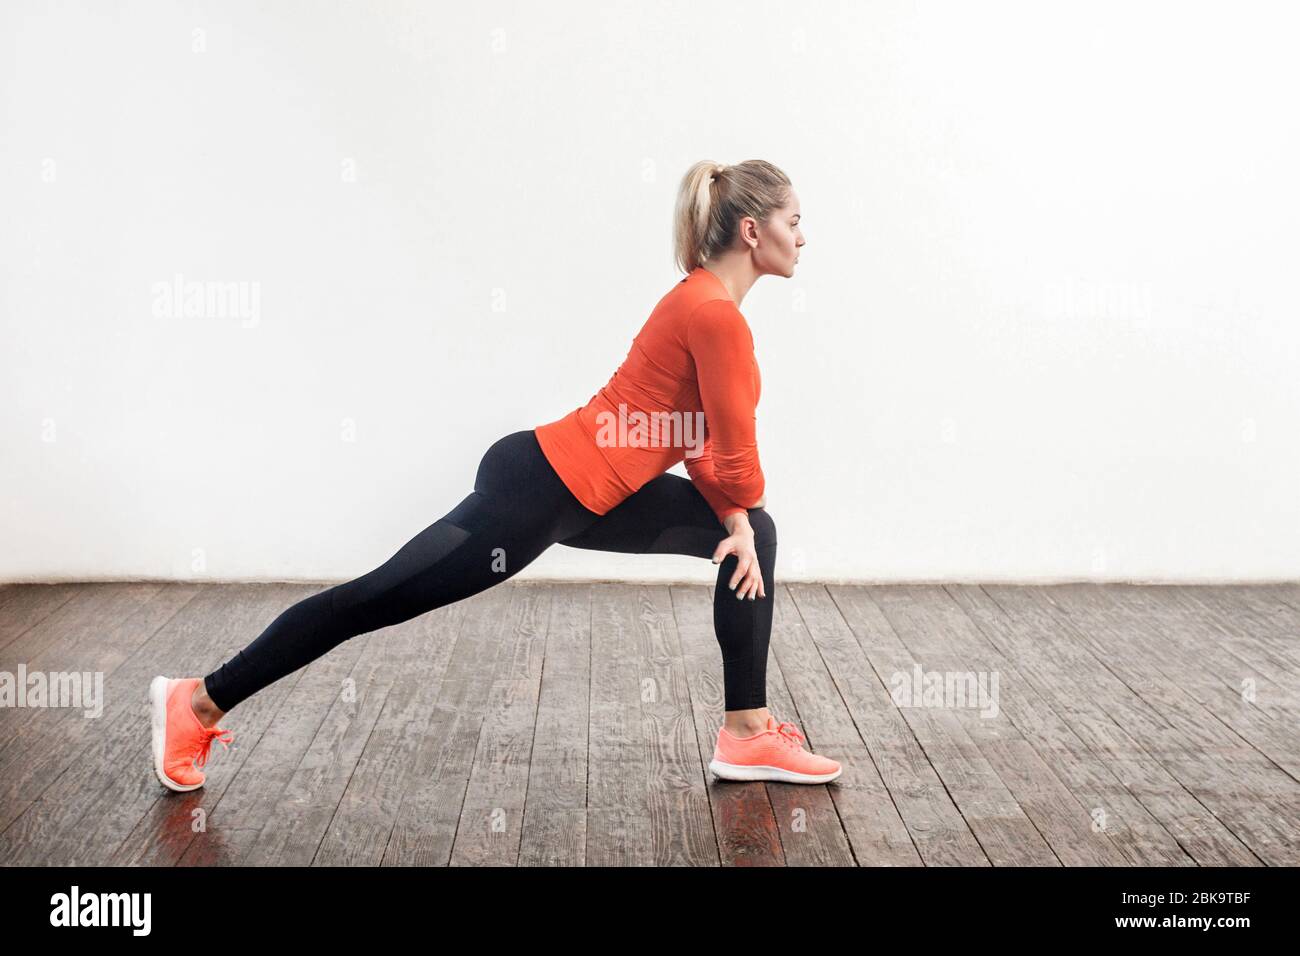 Mujer atractiva atlética delgada con ropa deportiva ajustada haciendo ejercicios de estiramiento de para una flexibilidad, en la parte inferior del cuerpo. Atención de salud, acti deportivo Fotografía de